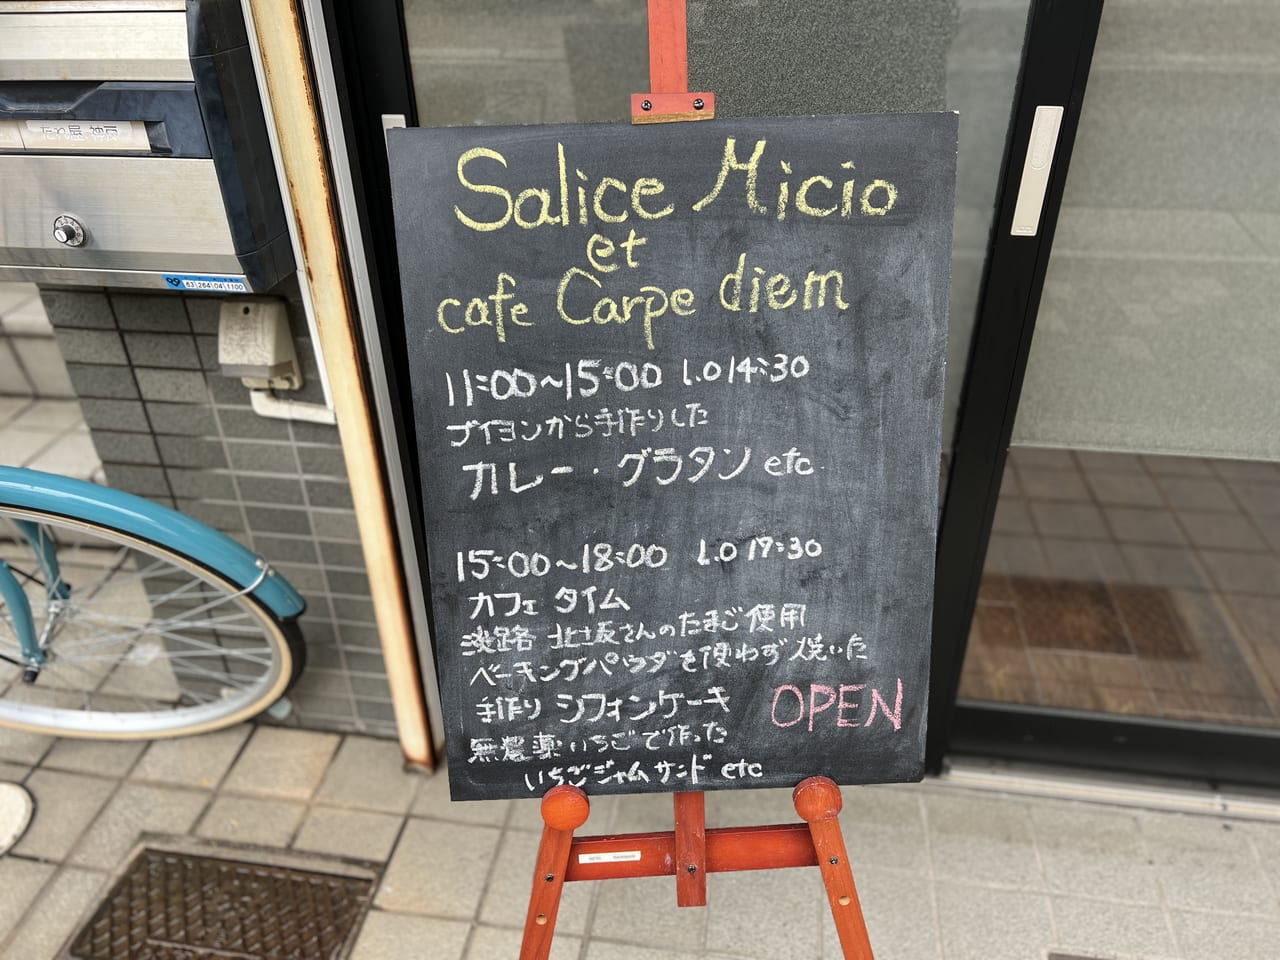 Salice Micio et cafe Carpe diem